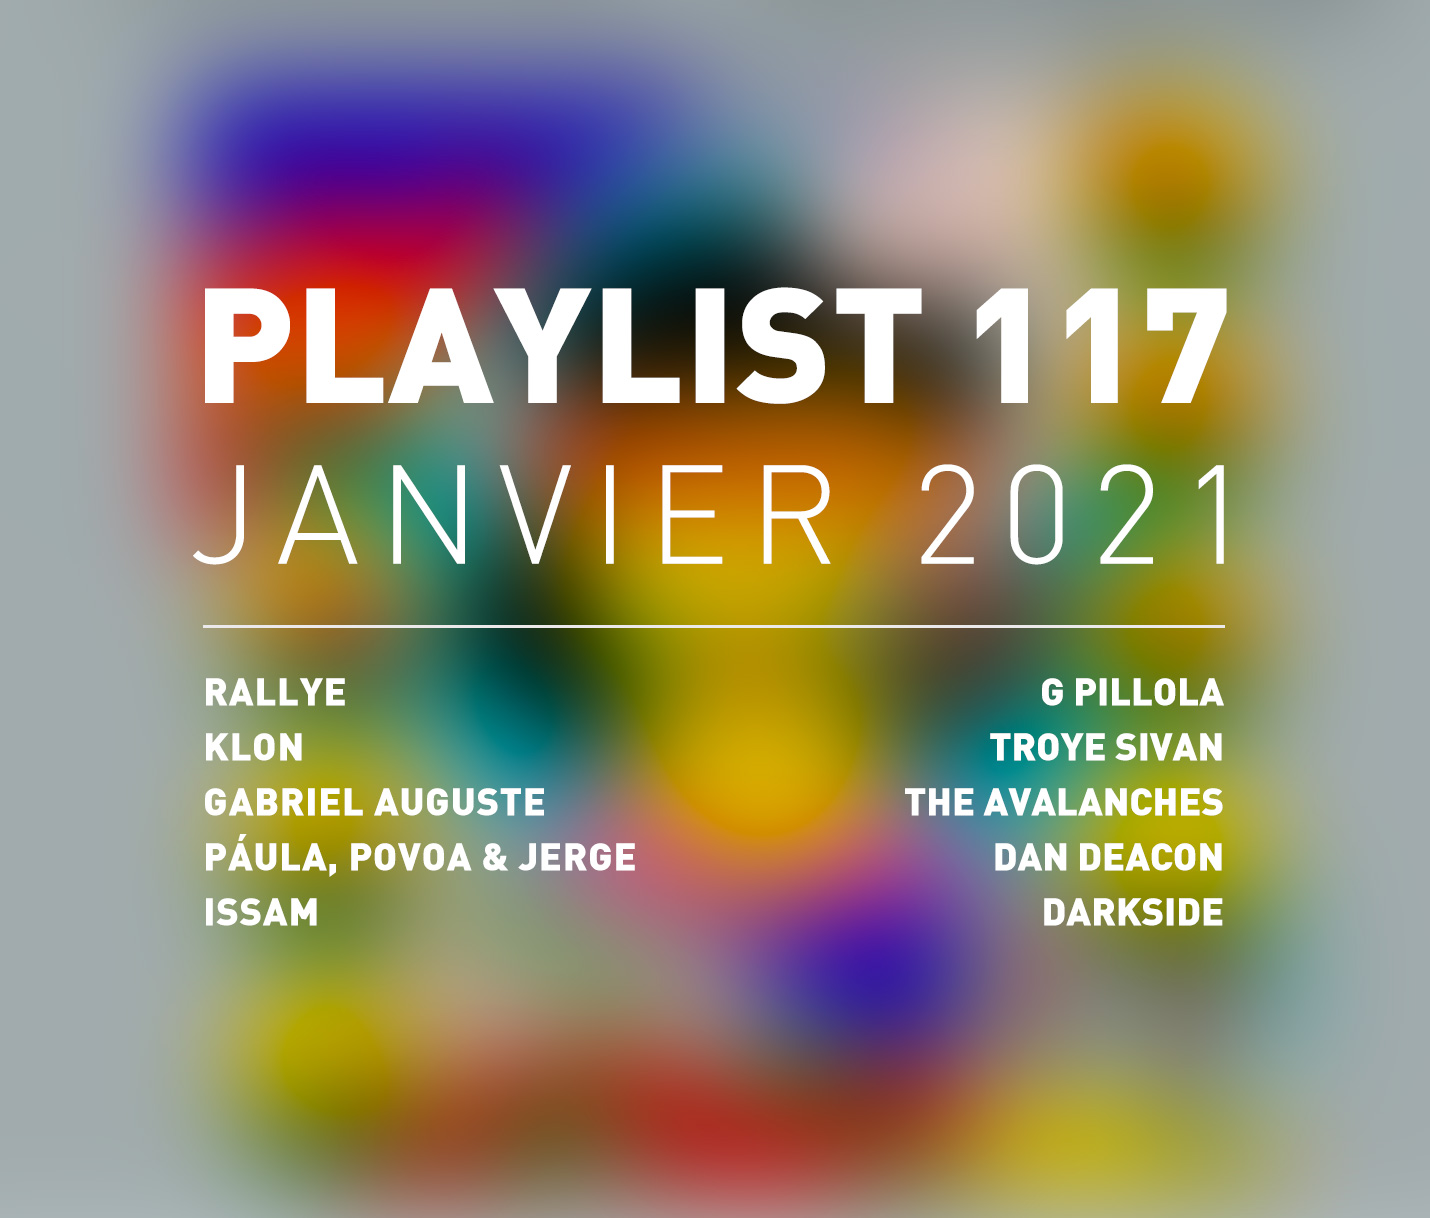 Playlist 117 : Klon, Gabriel Auguste, Issam, Darkside, etc.